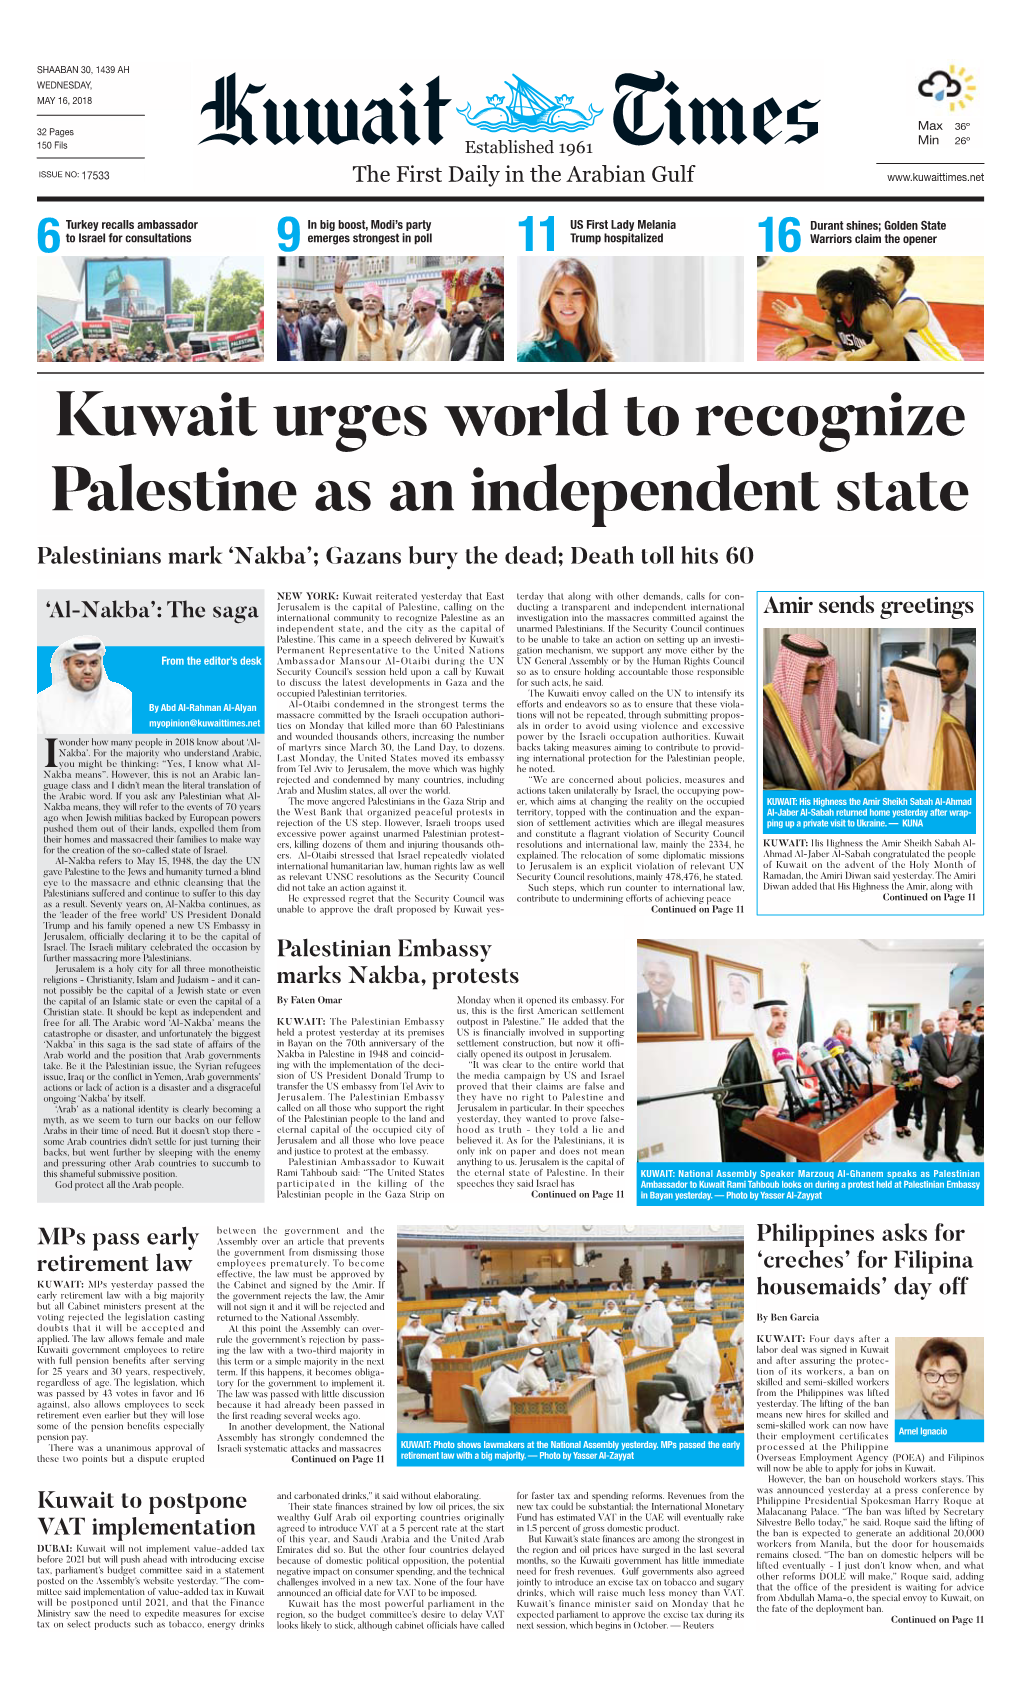 Kuwaittimes 16-5-2018.Qxp Layout 1